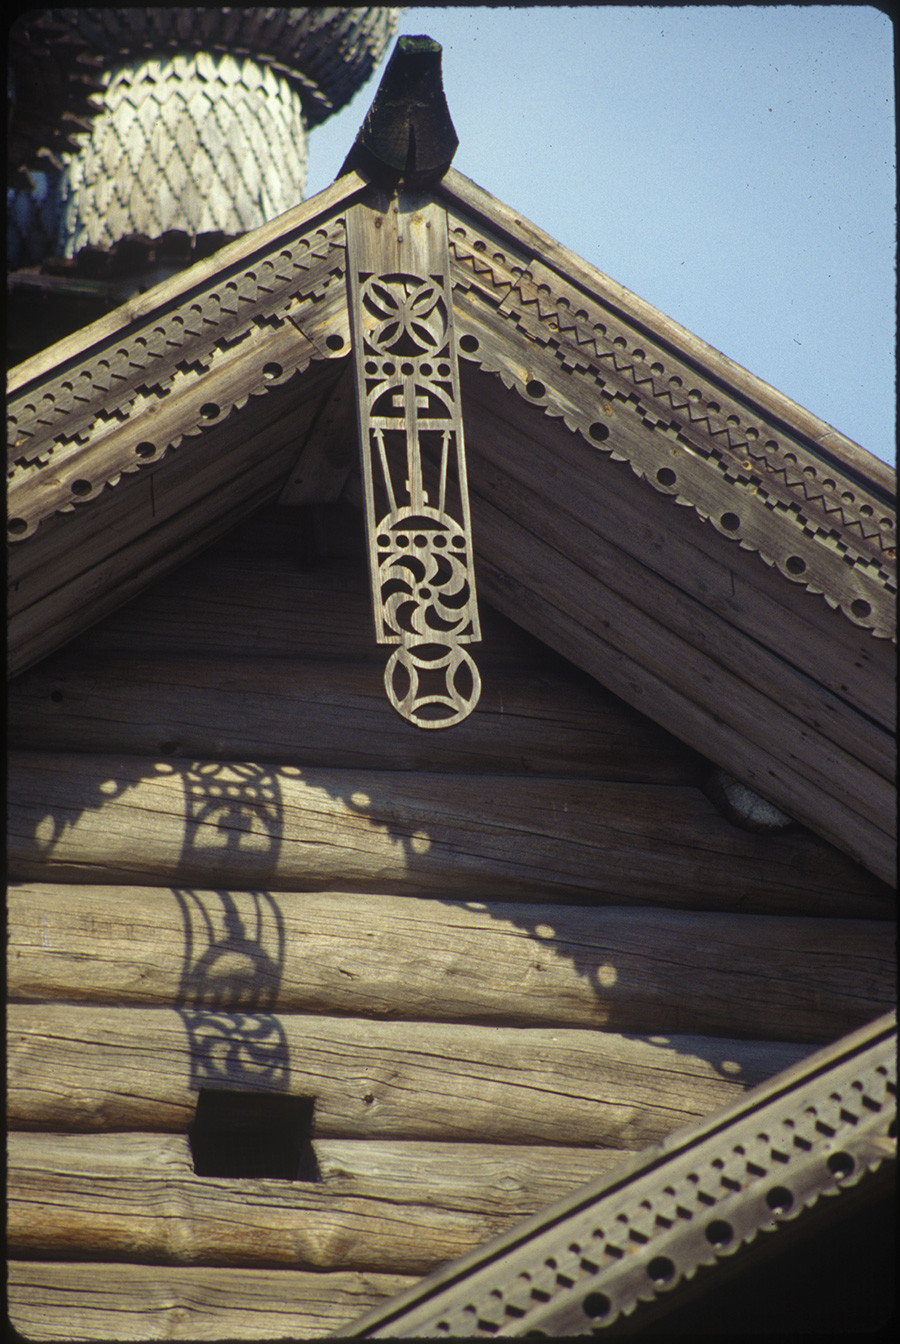 Chiesa dell'Intercessione. Facciata occidentale con intaglio decorativo. 6 agosto 1991